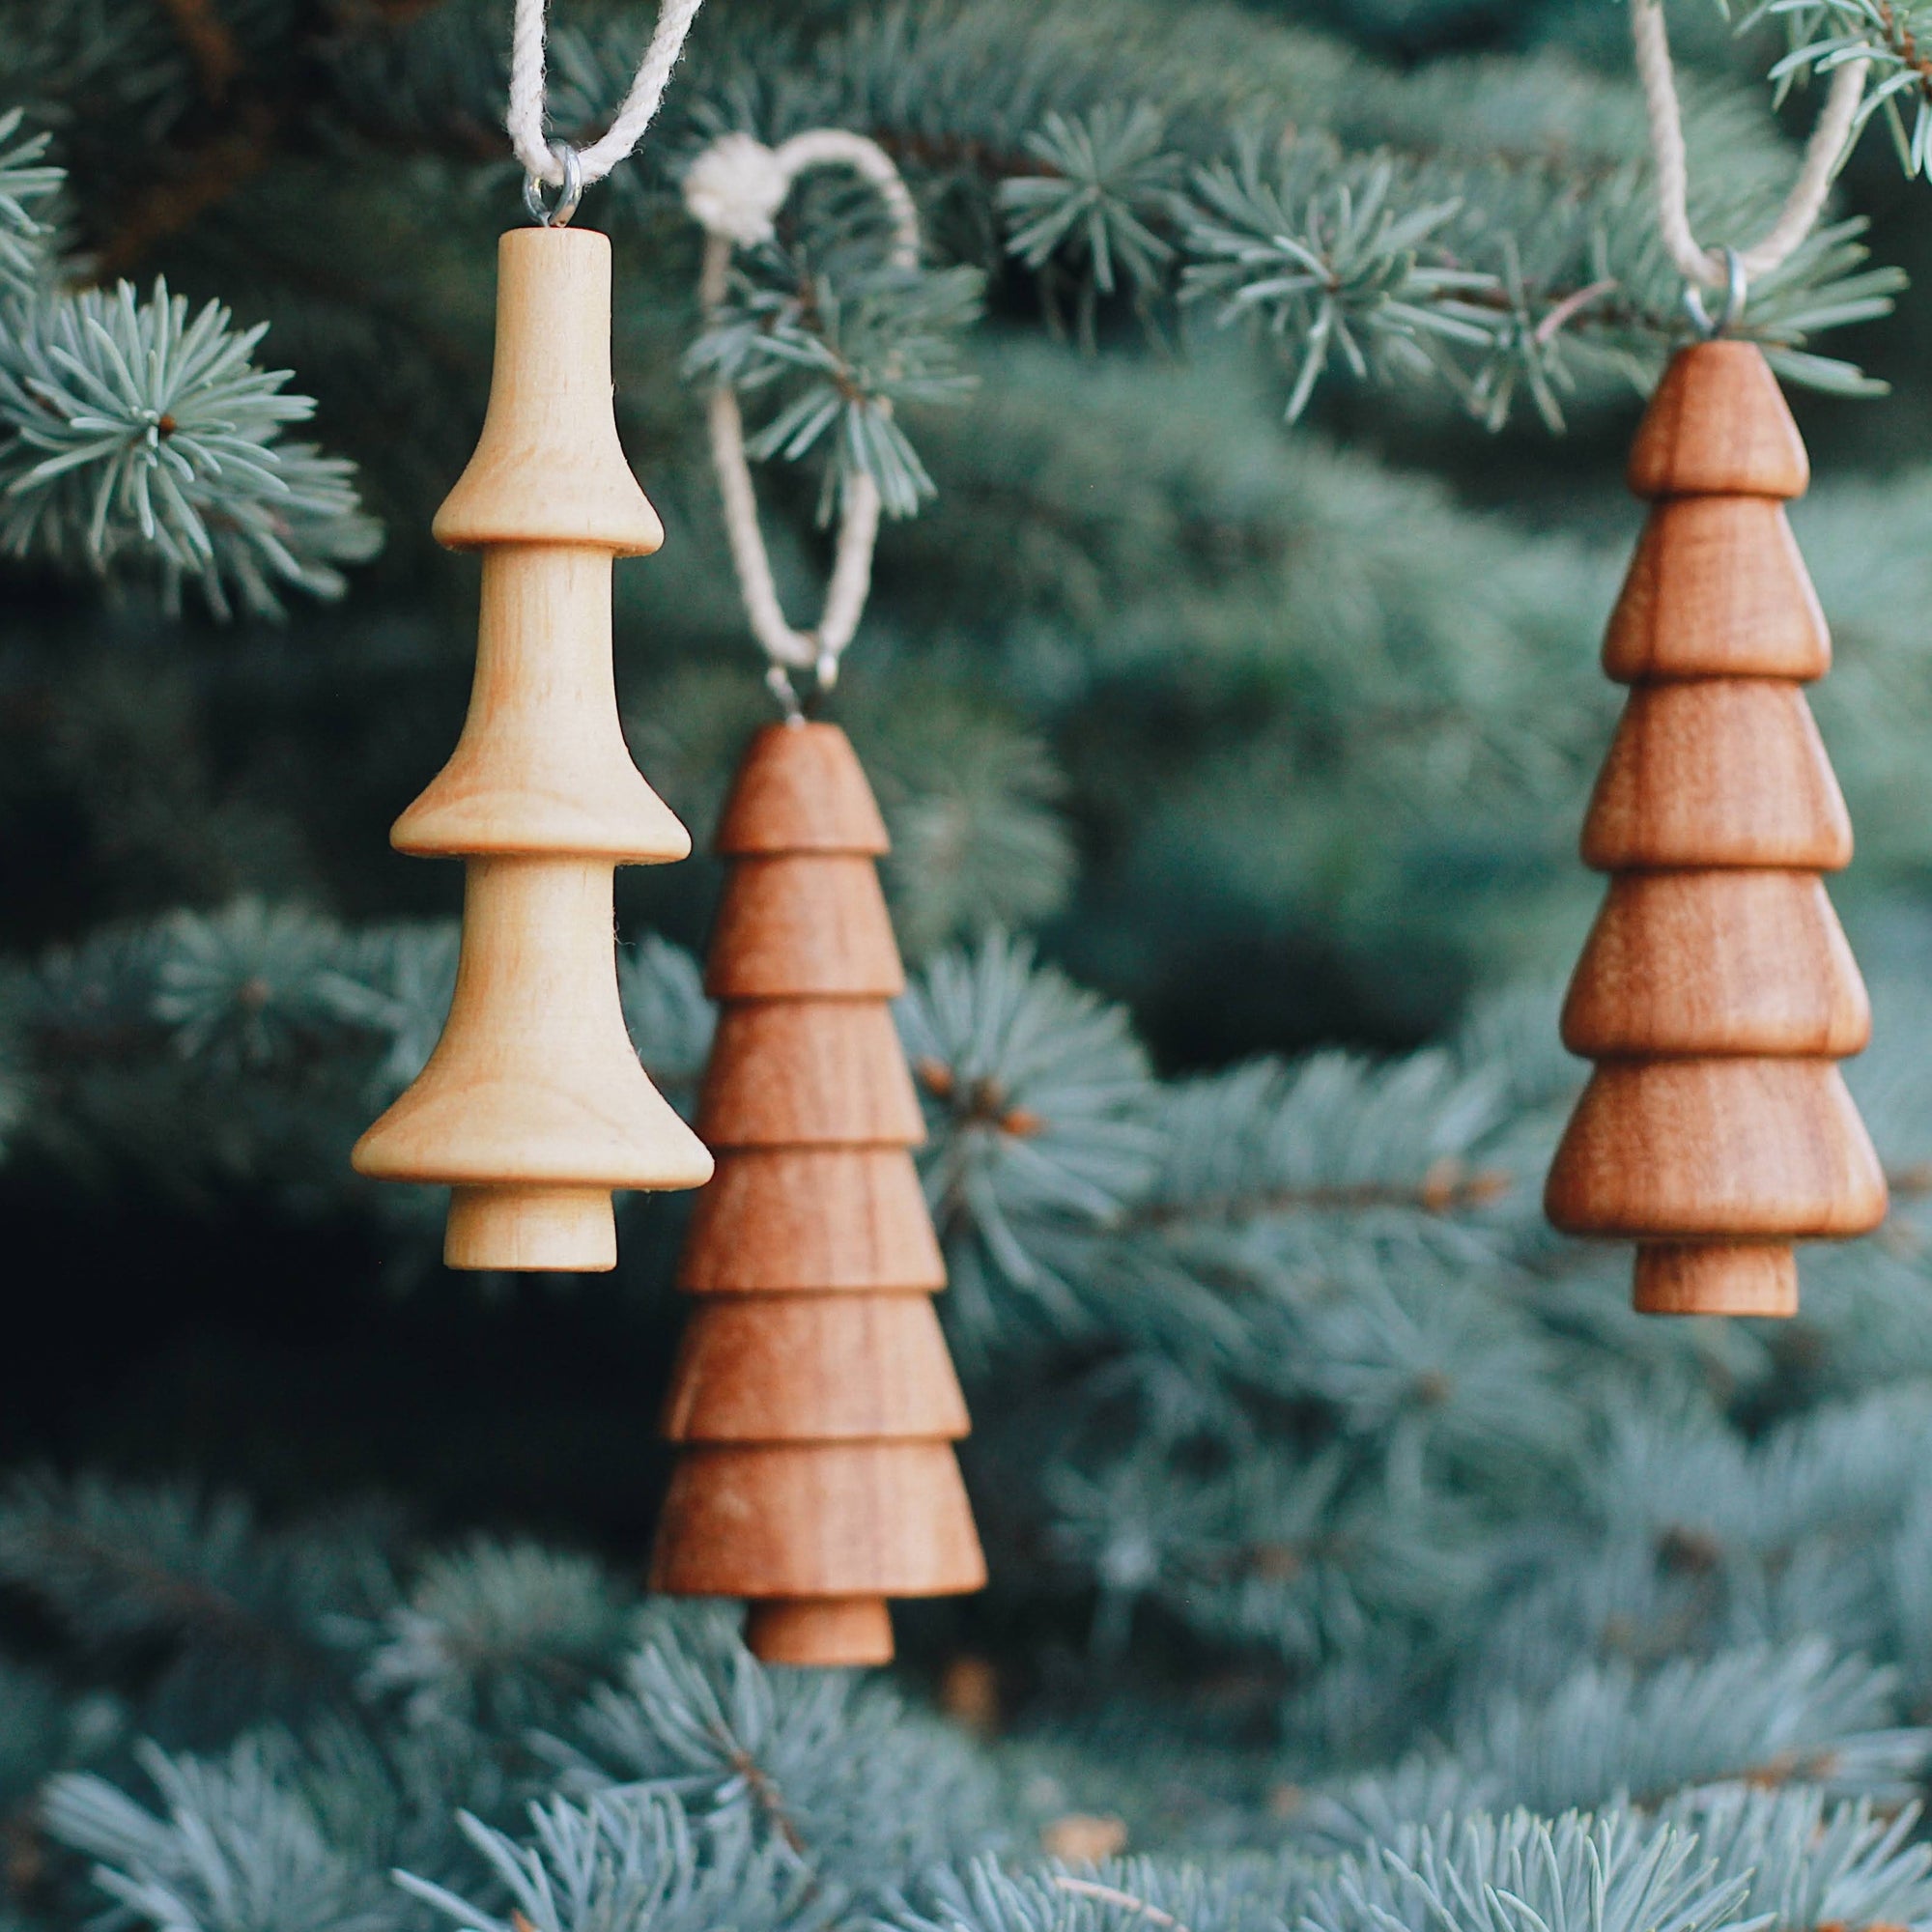 Wooden Bell Ornament, Fair Trade Wood Ornaments